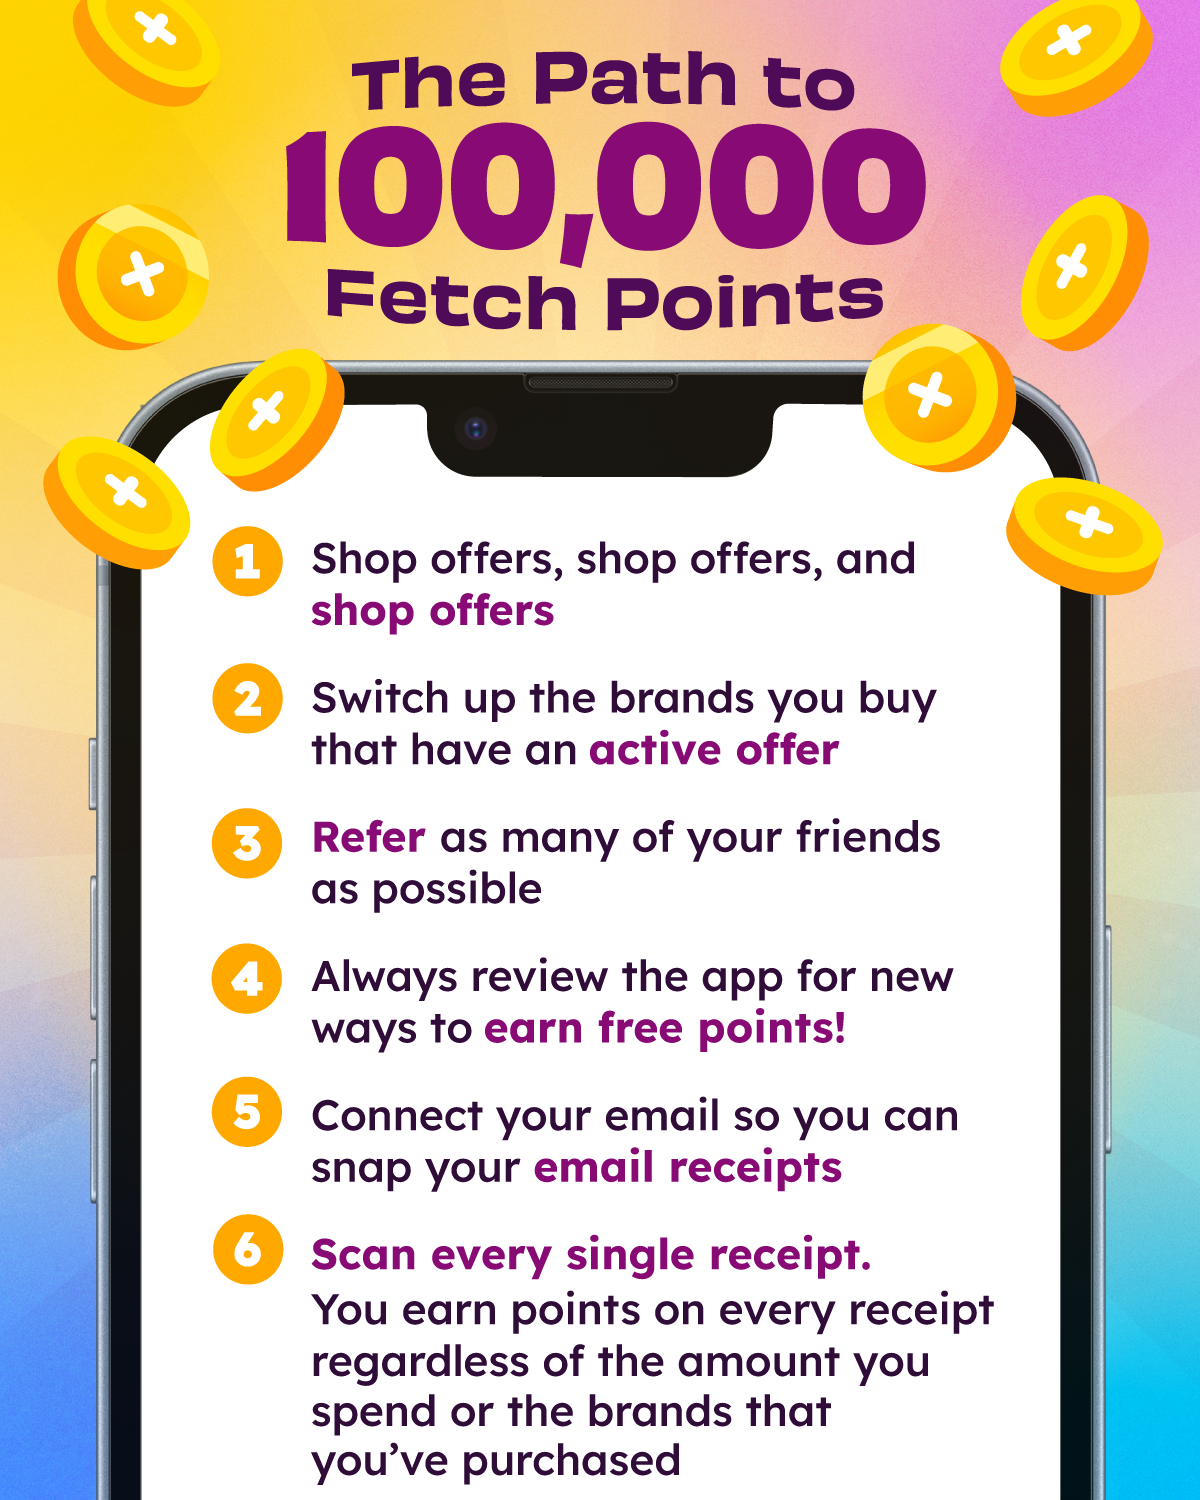 Fetch Rewards Redeem Code Roblox